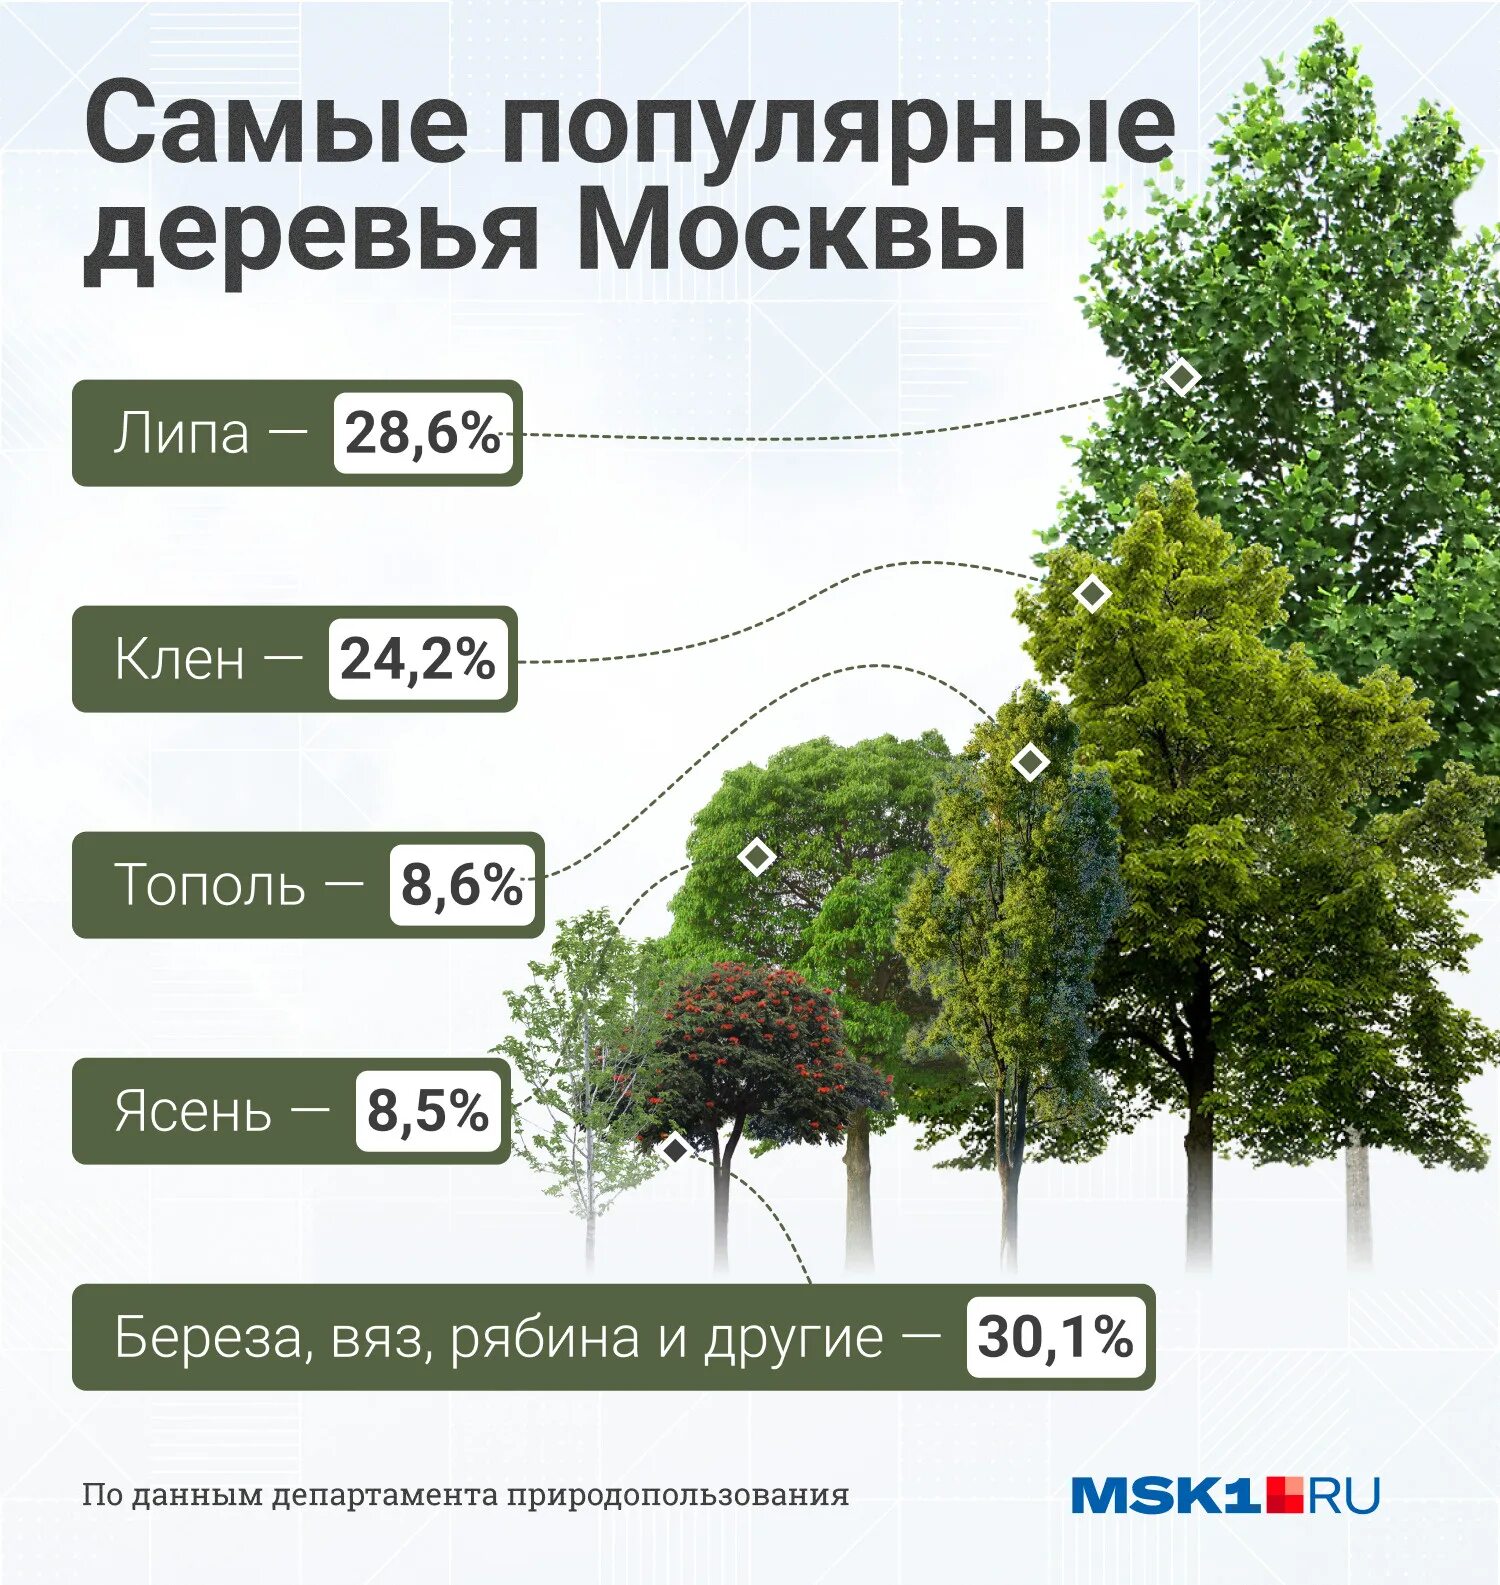 Сколько деревьев в москве. Распространенные деревья. Популярные деревья. Самые популярные деревья. Самые распространённые деревья в России.